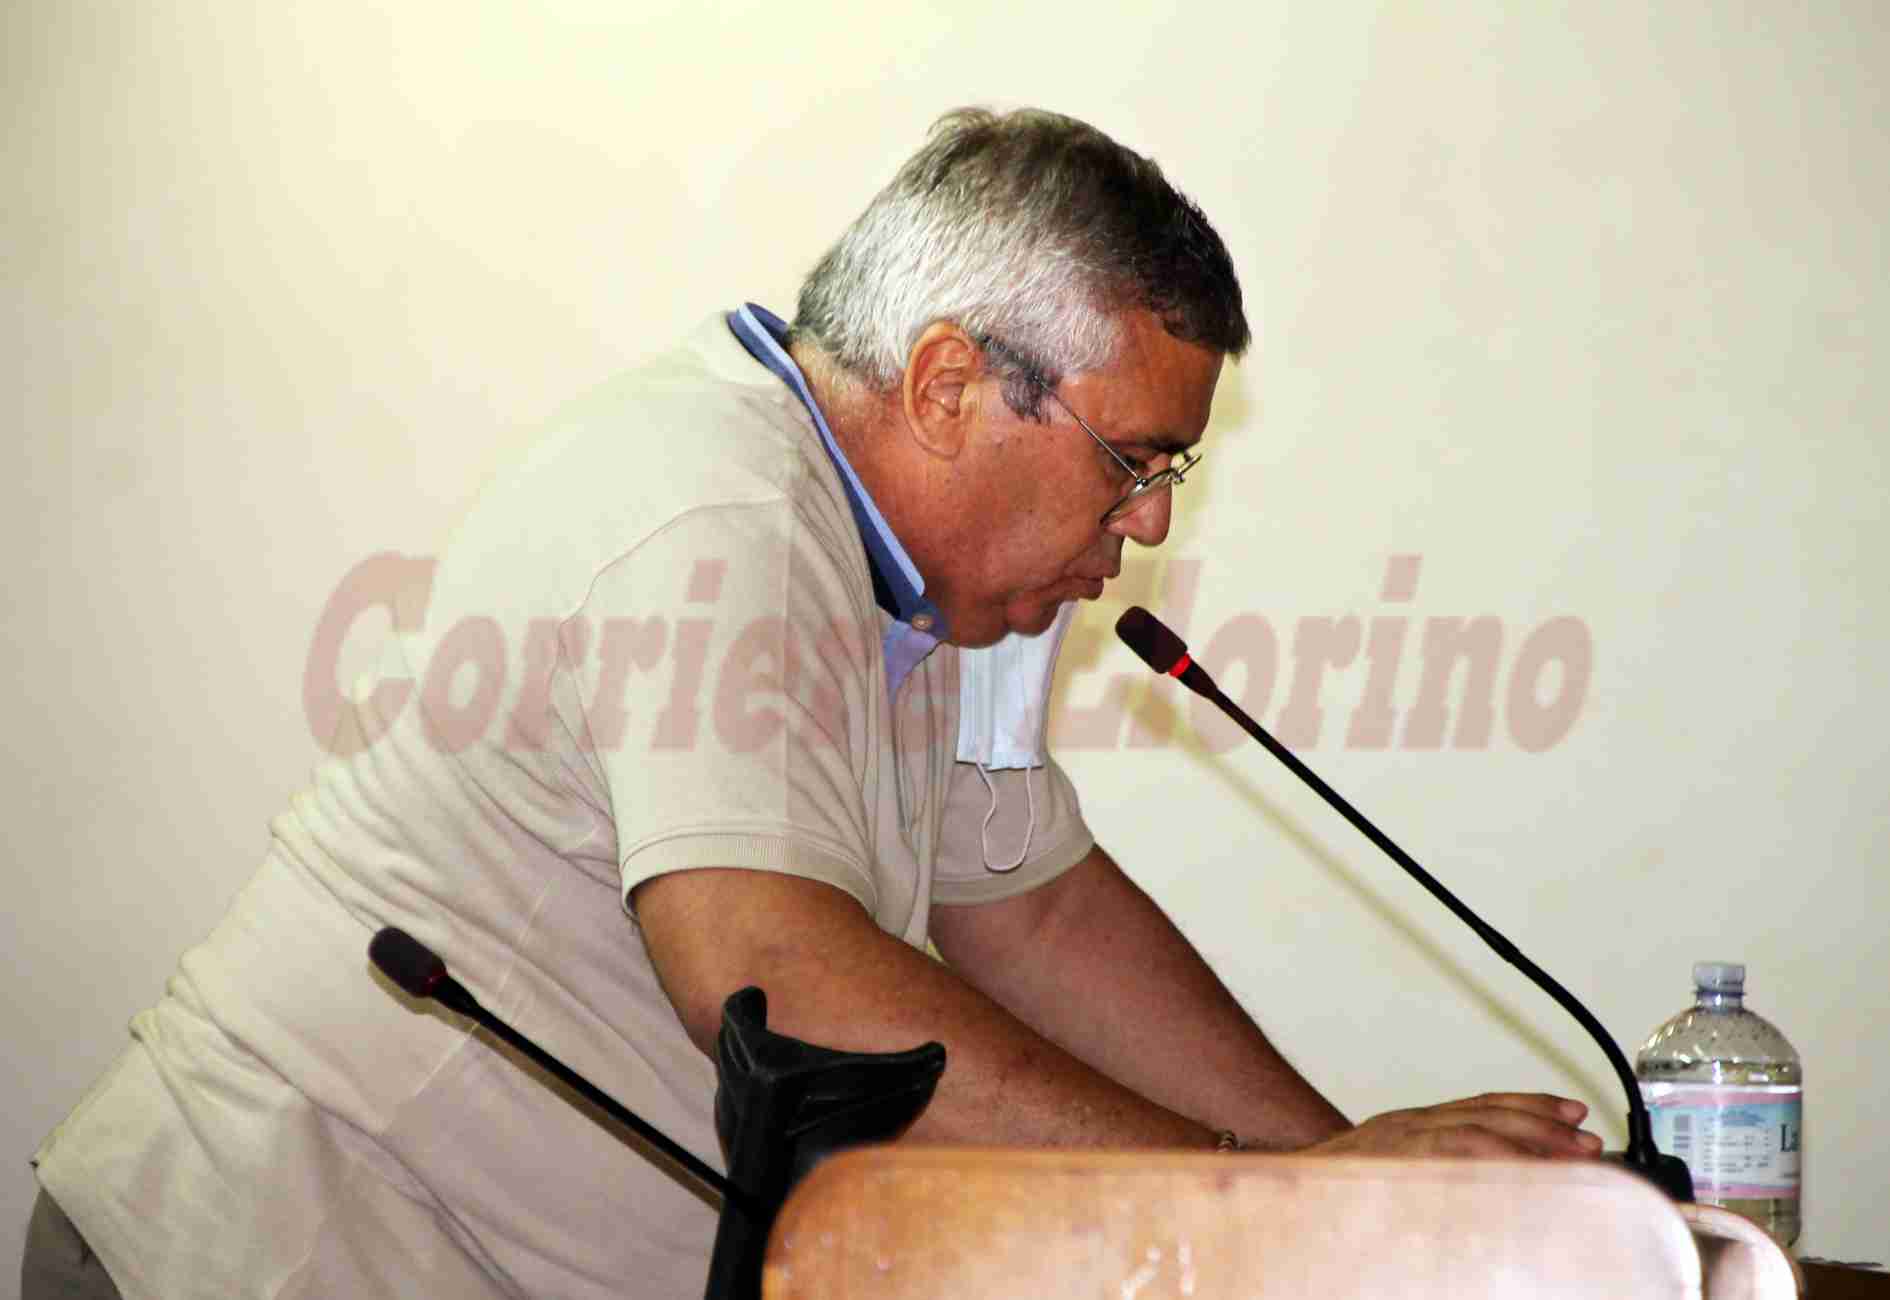 Consiglio Comunale, Luigi Calvo sul rientro in Maggioranza: “No grinfie da vecchia politica, ma unità di intenti”